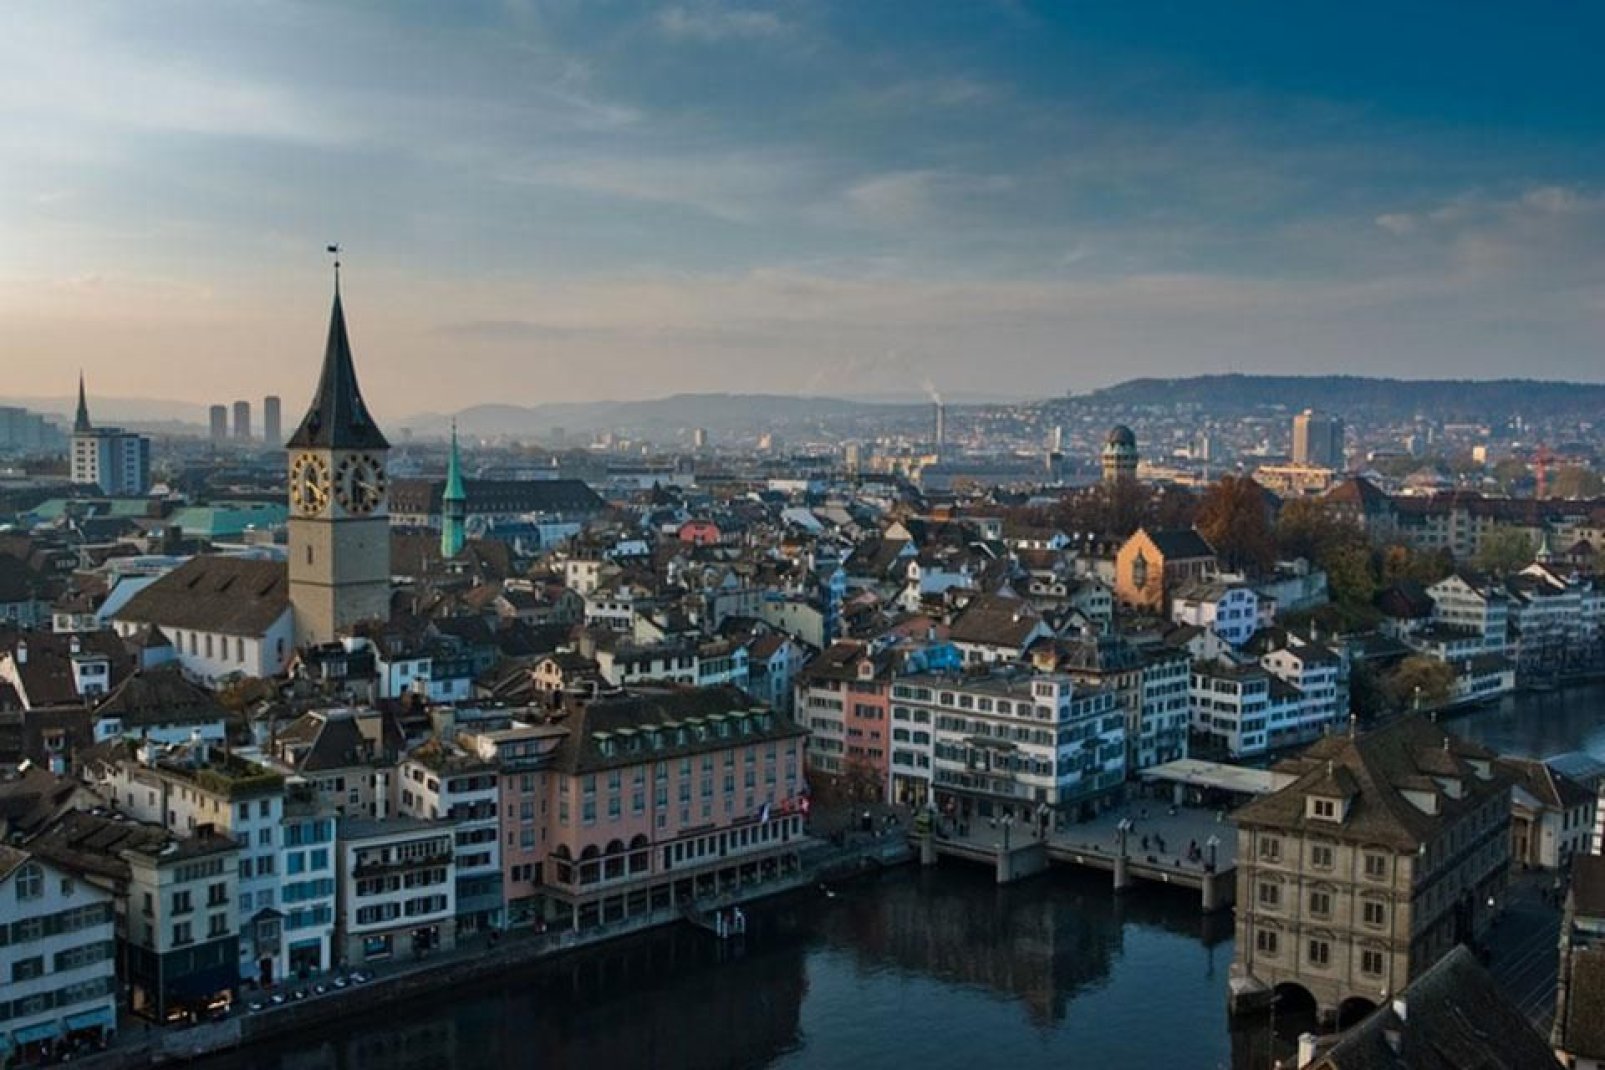 Zúrich tiene una gran atracción turística y es la ciudad suiza más visitada por los españoles.